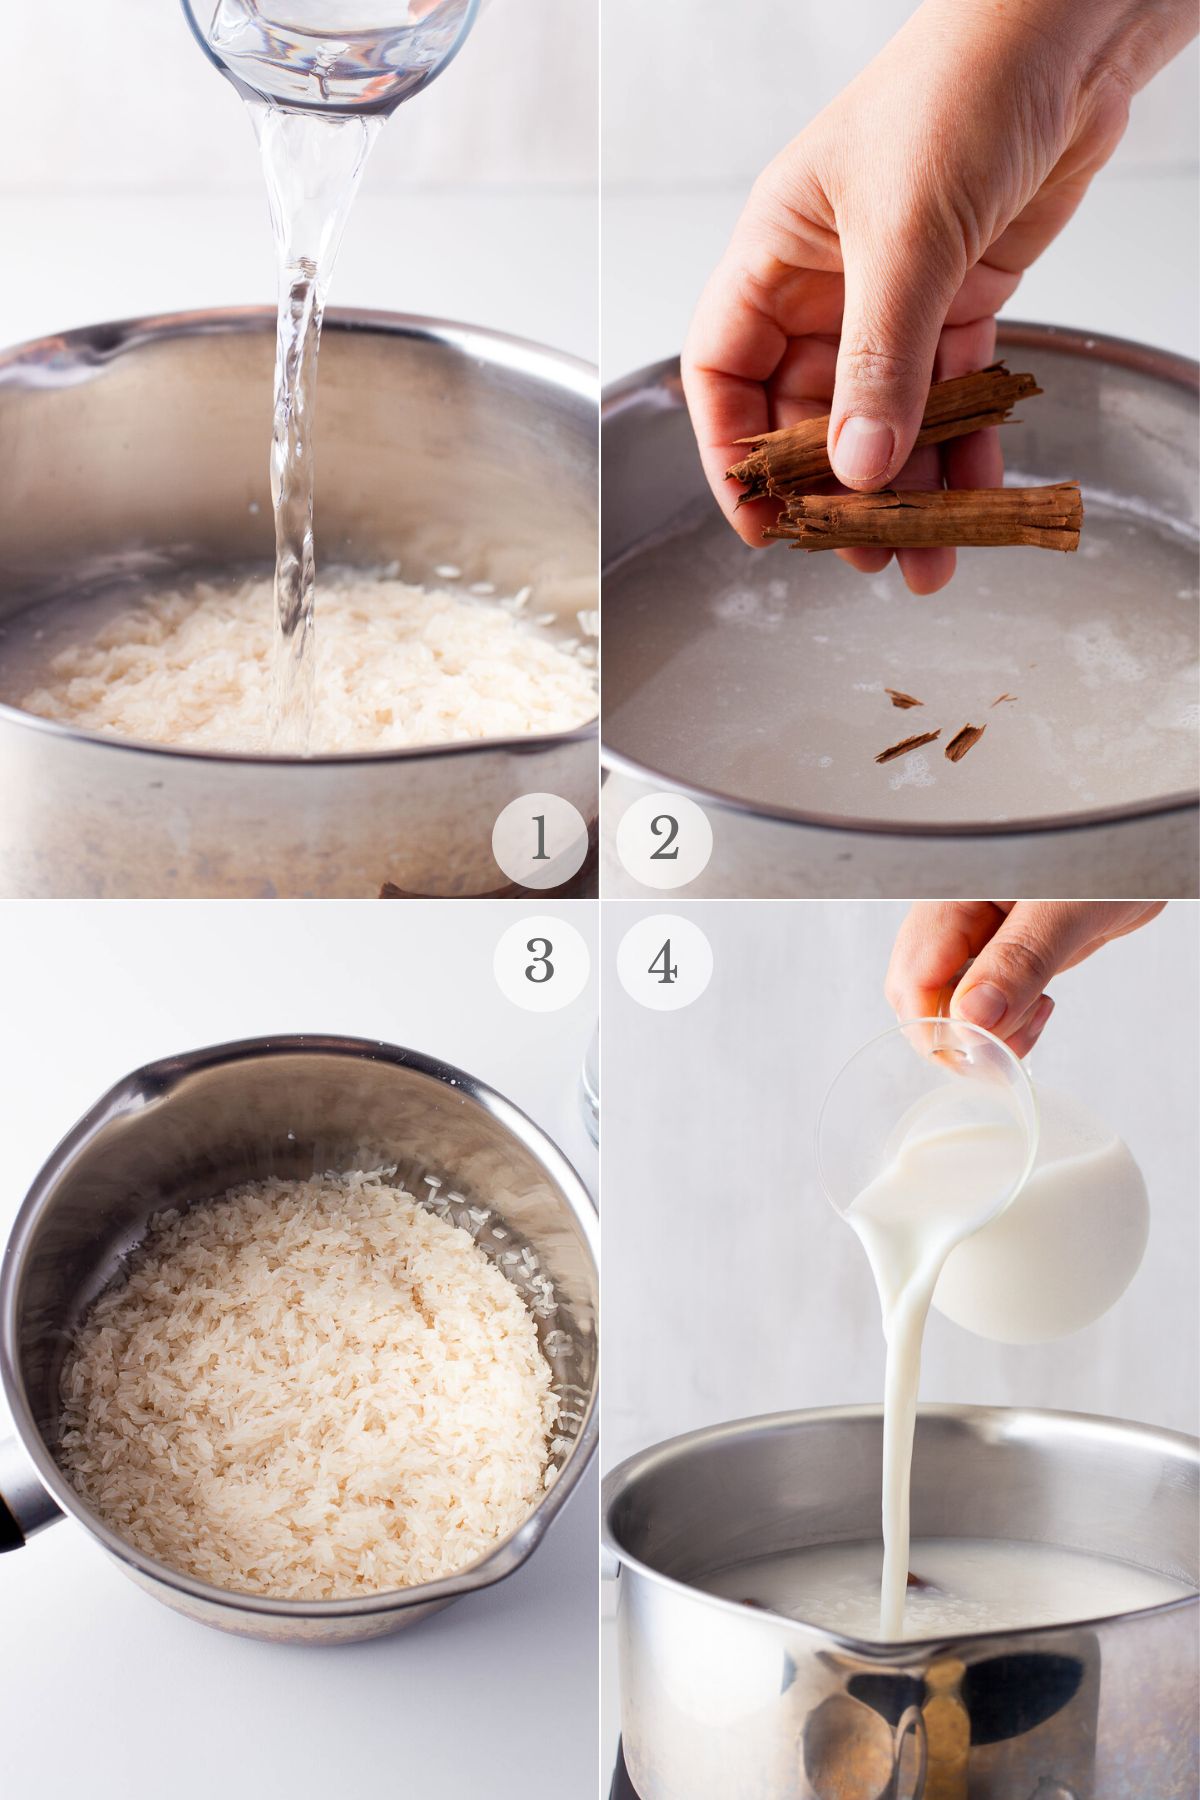 arroz con leche recipe steps 1-4